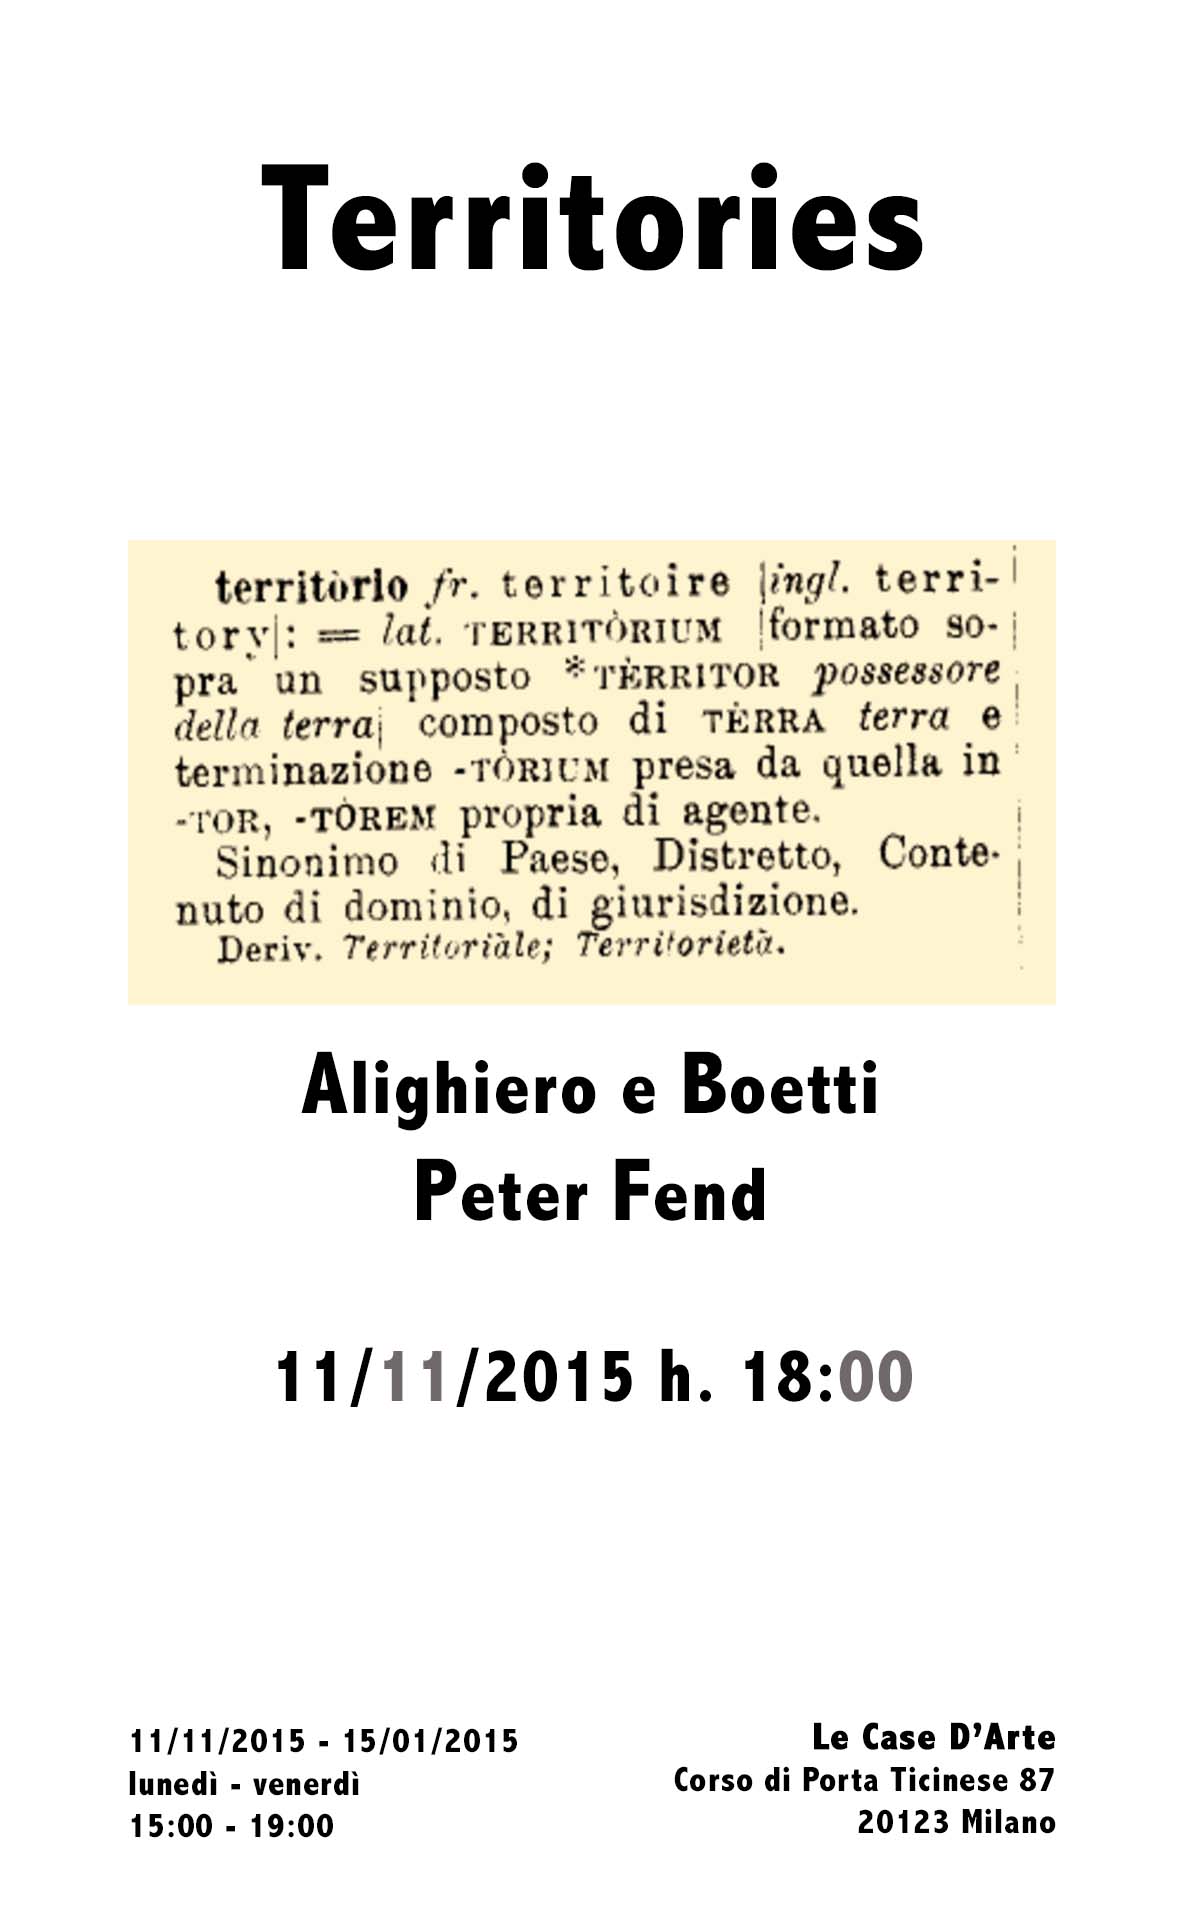 Alighiero e Boetti / Peter Fend – Territories